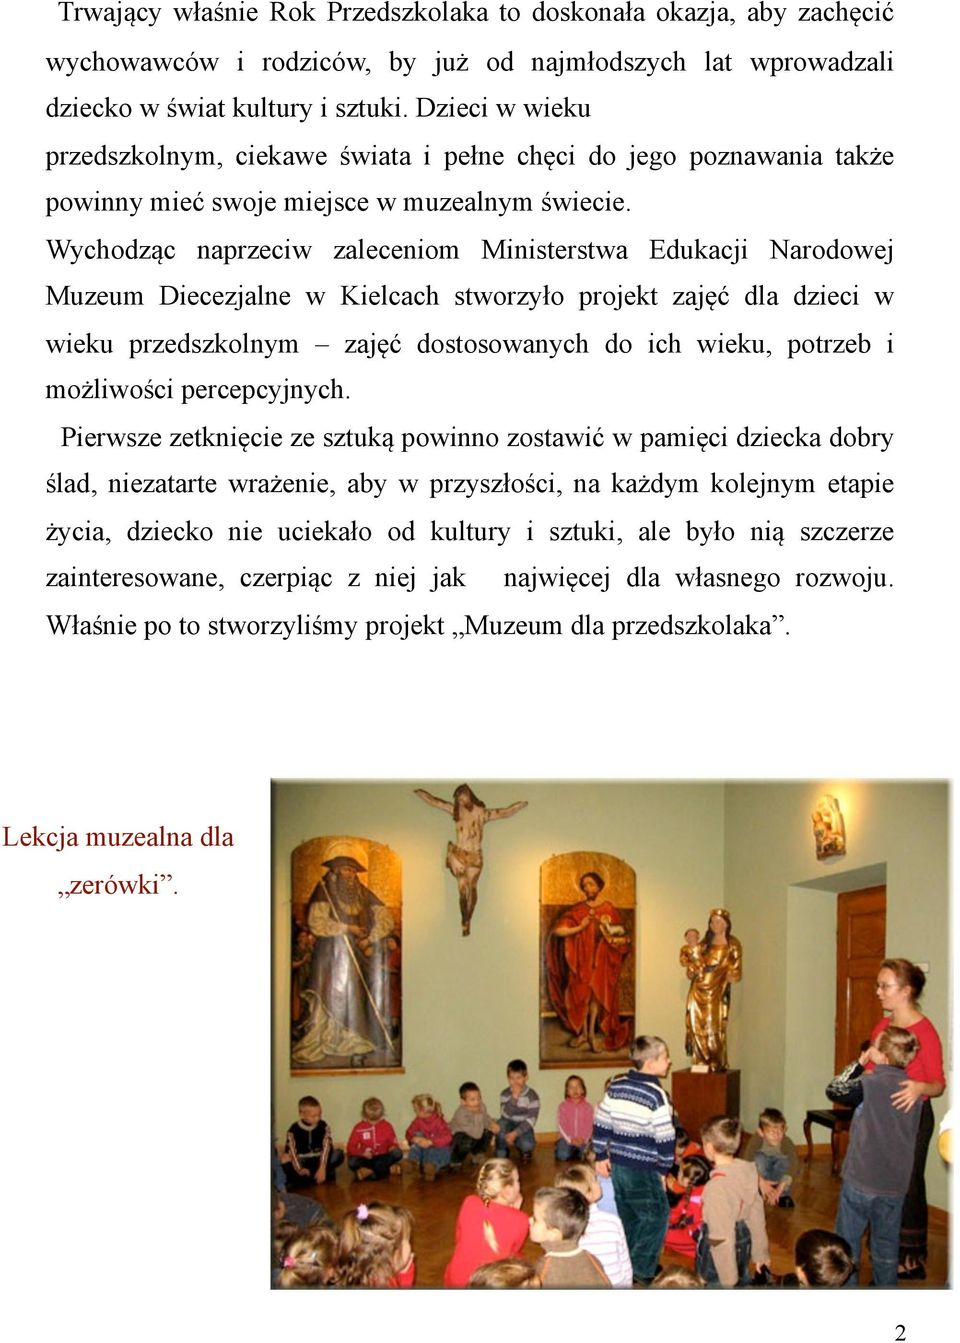 Wychodząc naprzeciw zaleceniom Ministerstwa Edukacji Narodowej Muzeum Diecezjalne w Kielcach stworzyło projekt zajęć dla dzieci w wieku przedszkolnym zajęć dostosowanych do ich wieku, potrzeb i